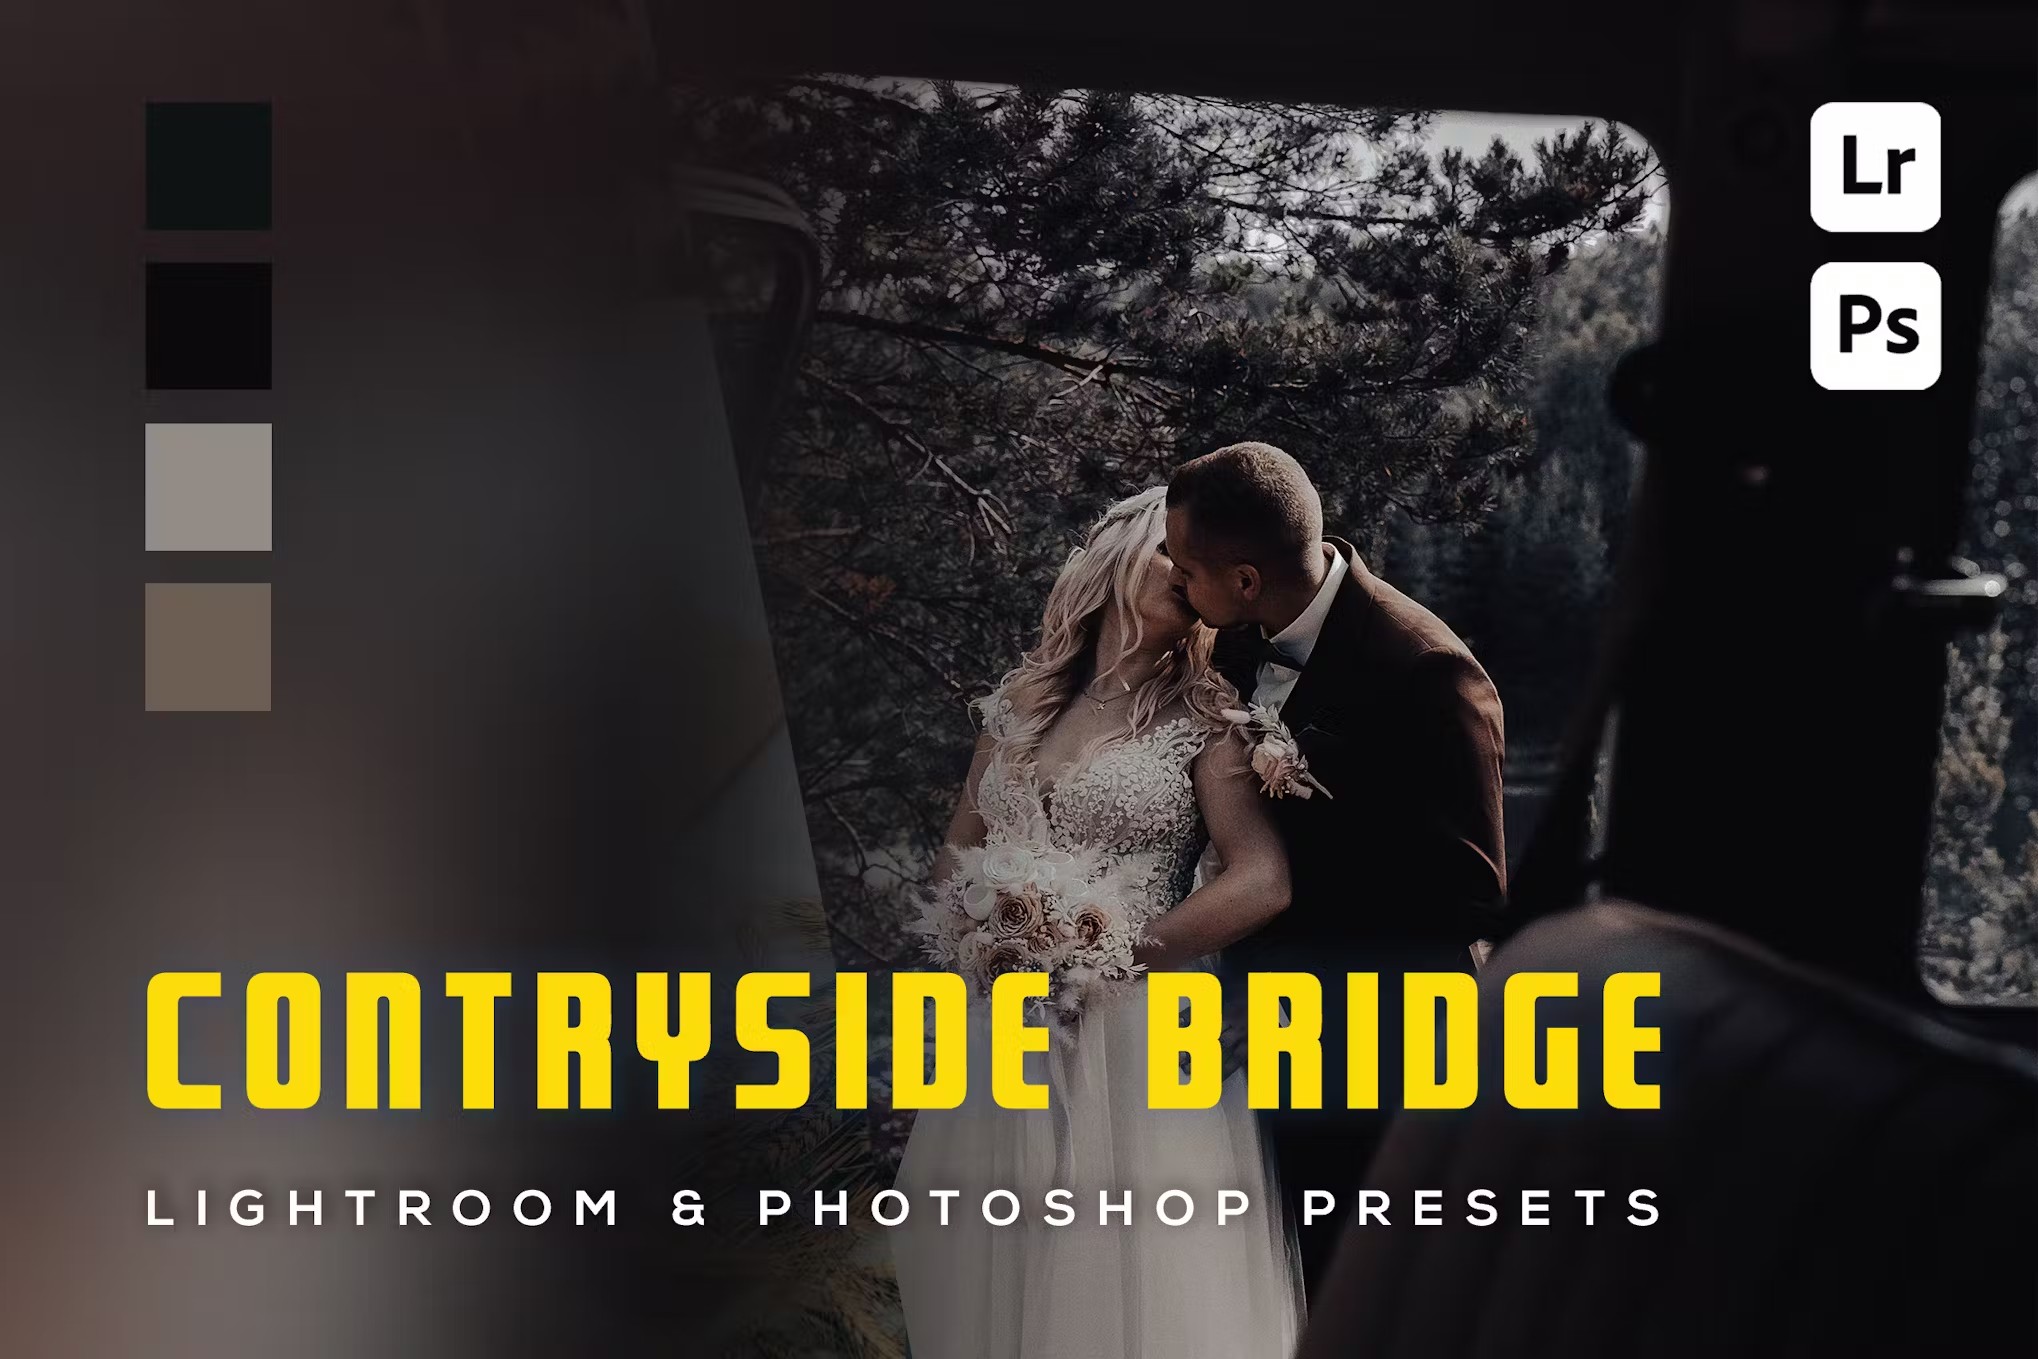 现代电影情绪婚礼旅拍摄影后期调色Lightroom预设 6 Contryside Bridge, Lightroom und Photoshop-Voreinstellung 插件预设 第1张